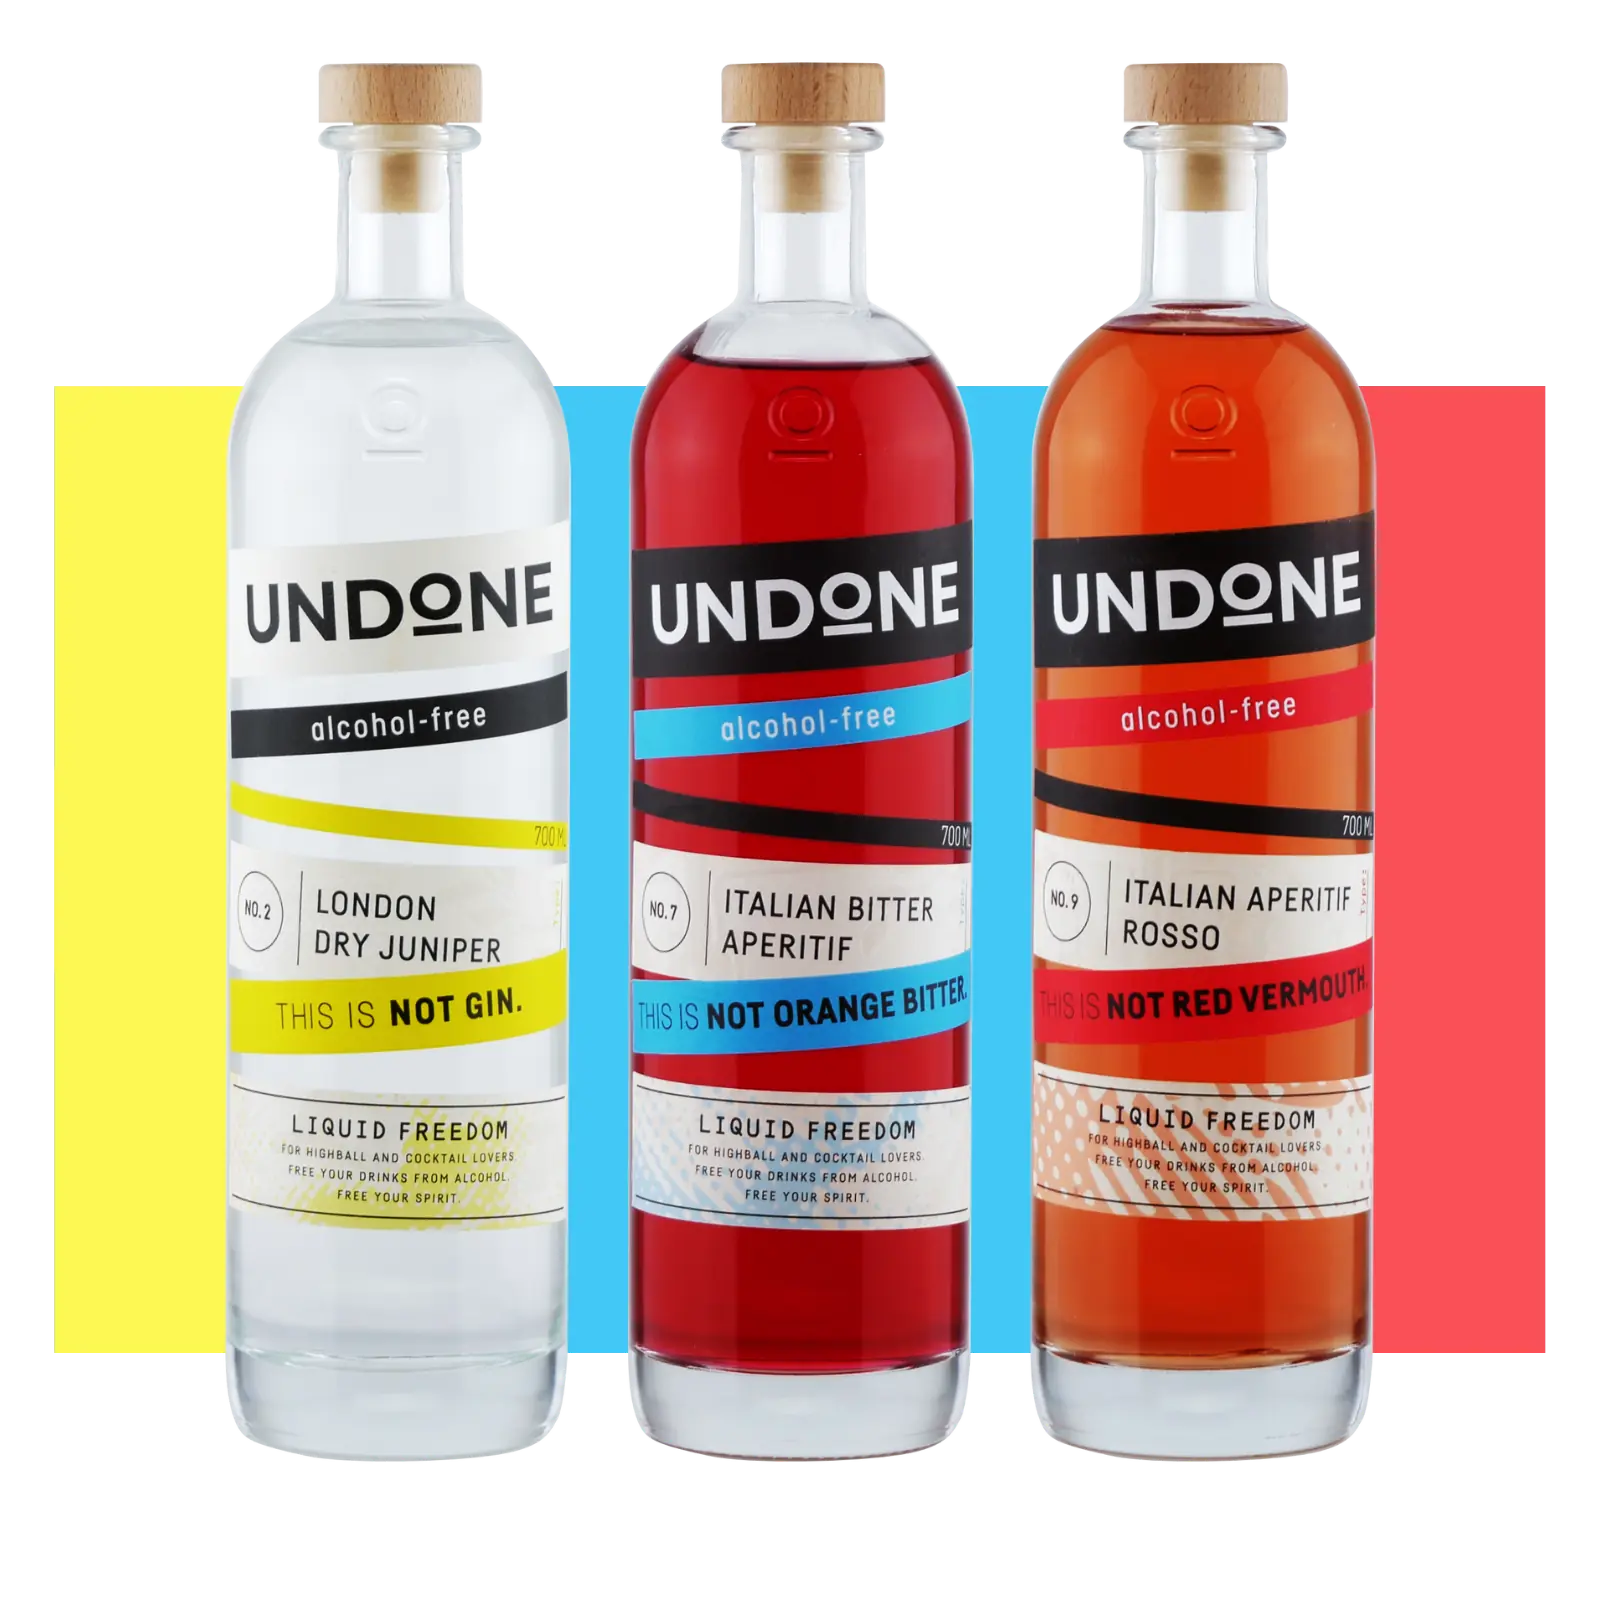 Drei Flaschen Undone Negroni Bundle, London Dry Junioer, Italian Bitter Aperitif und Italian Aperitif Rosso